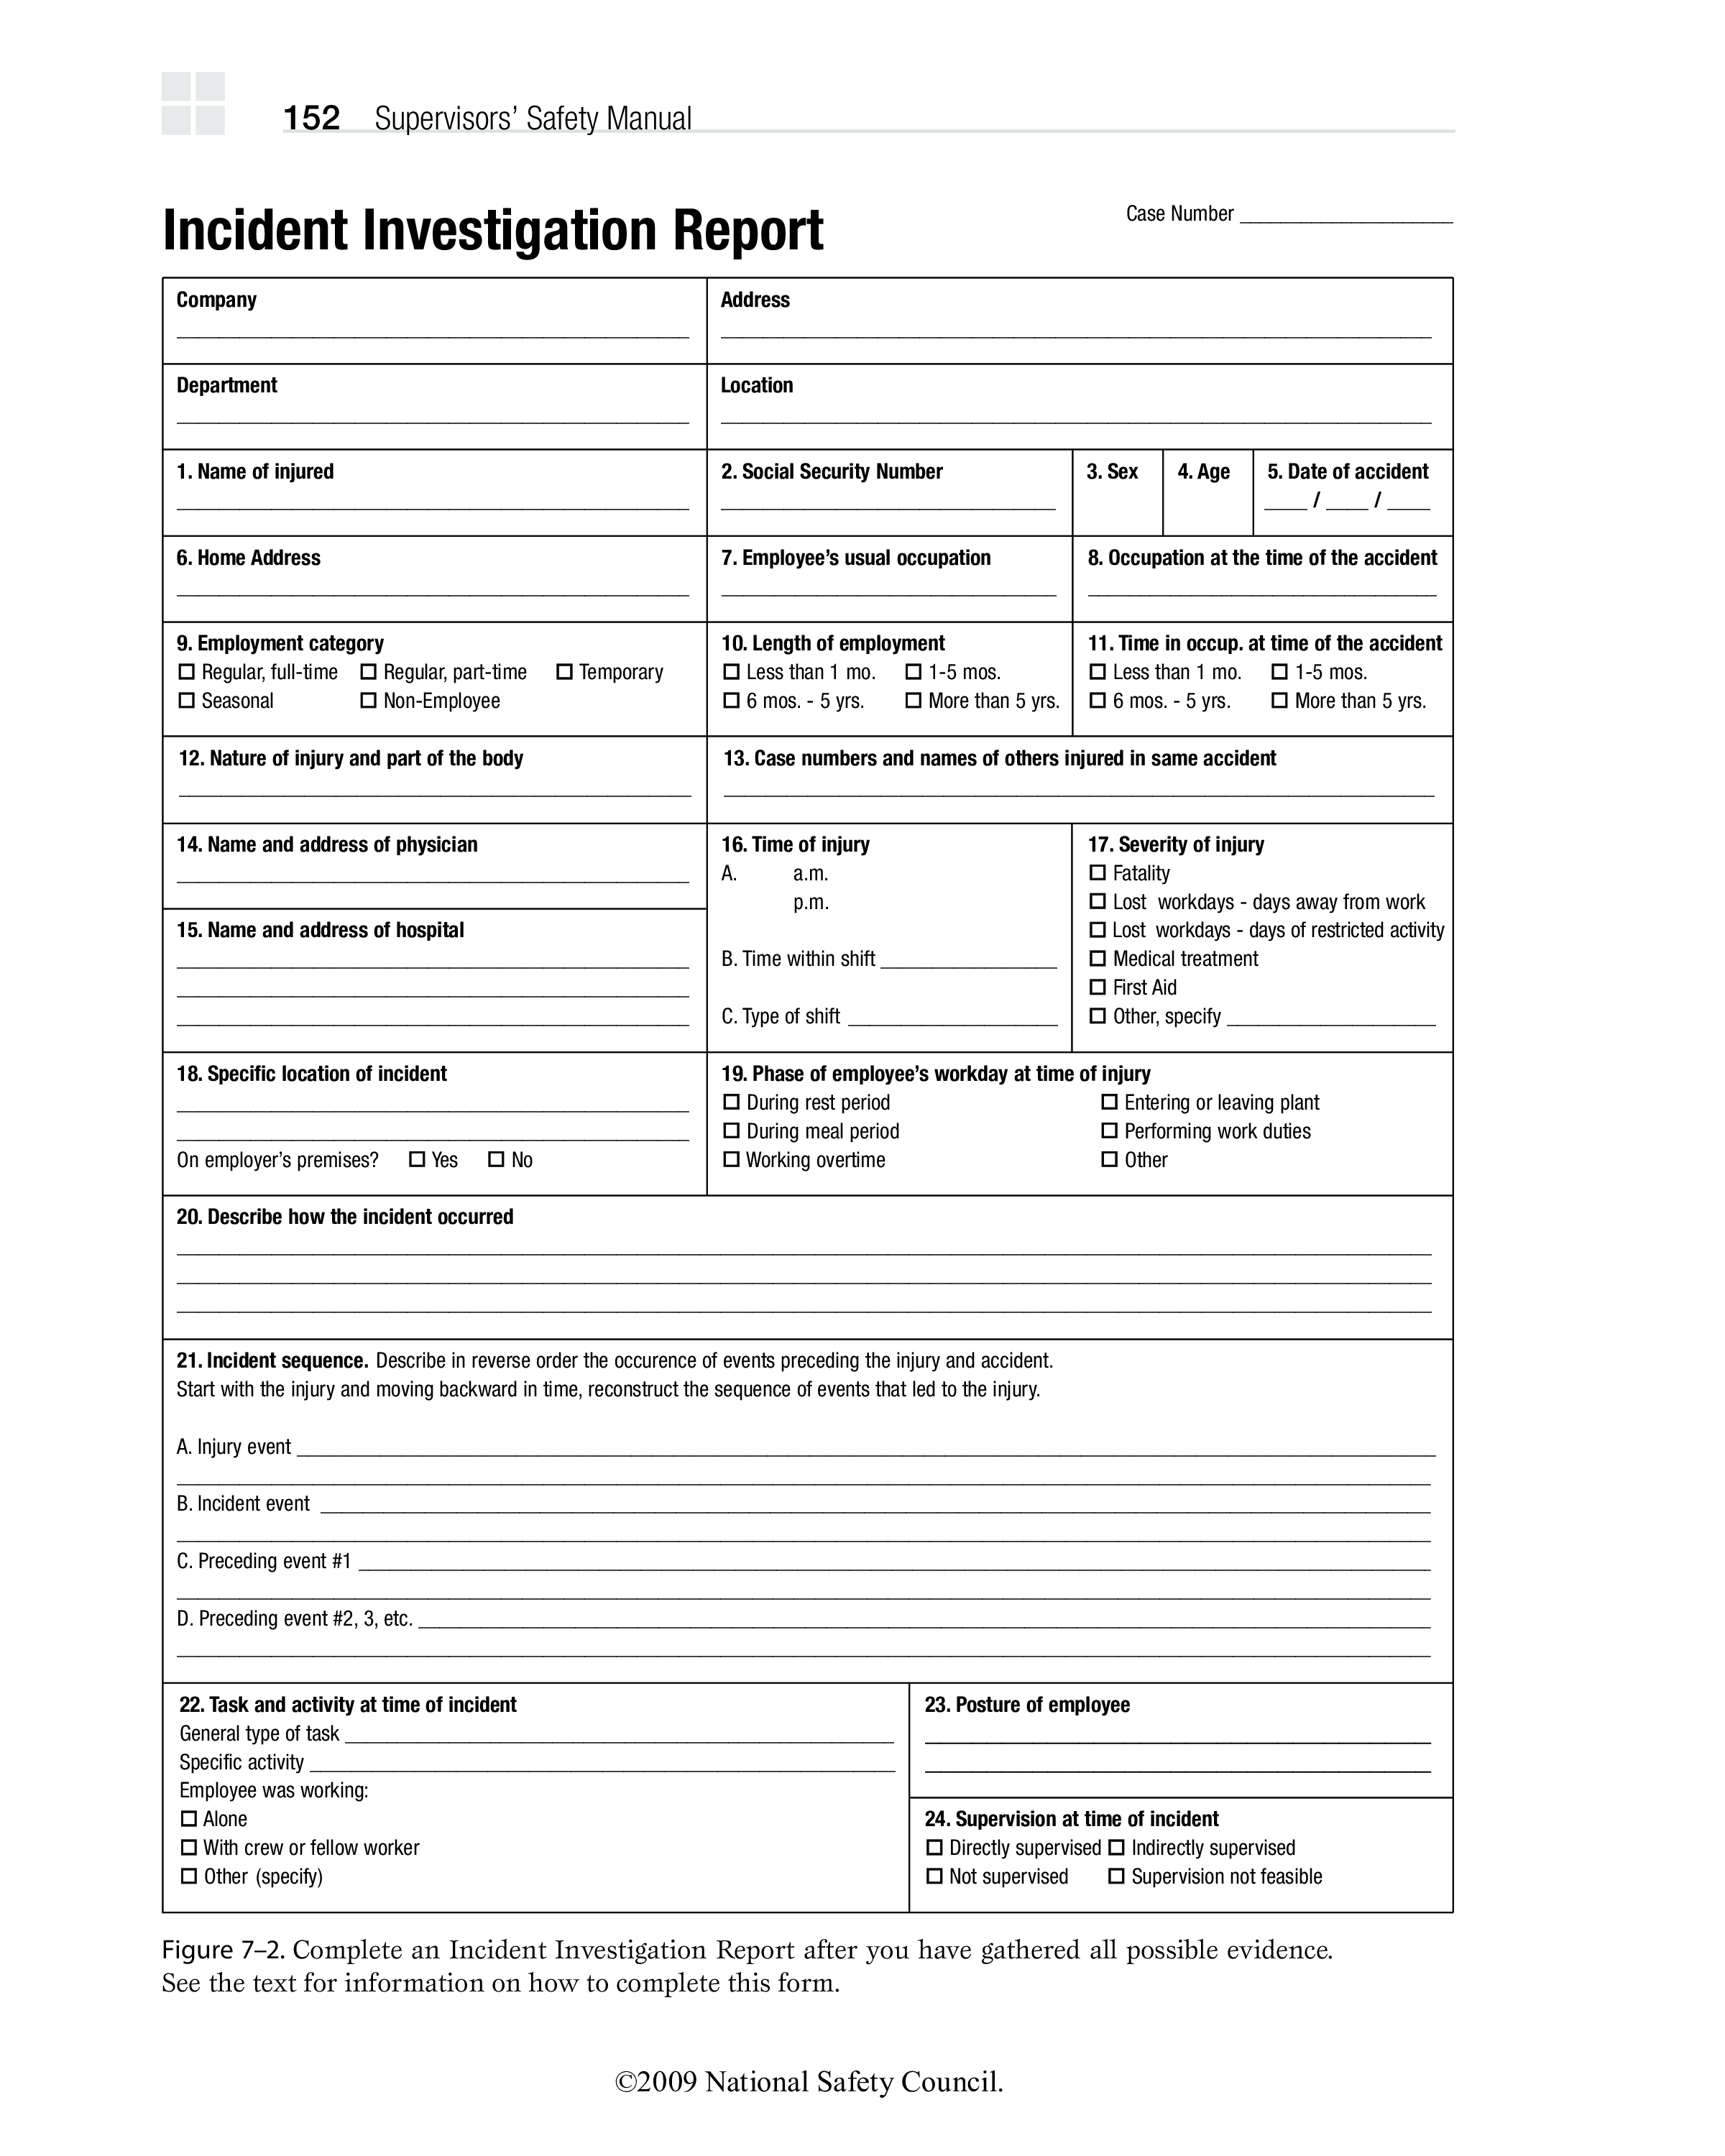 Incident Investigation Report Templates At Allbusinesstemplates